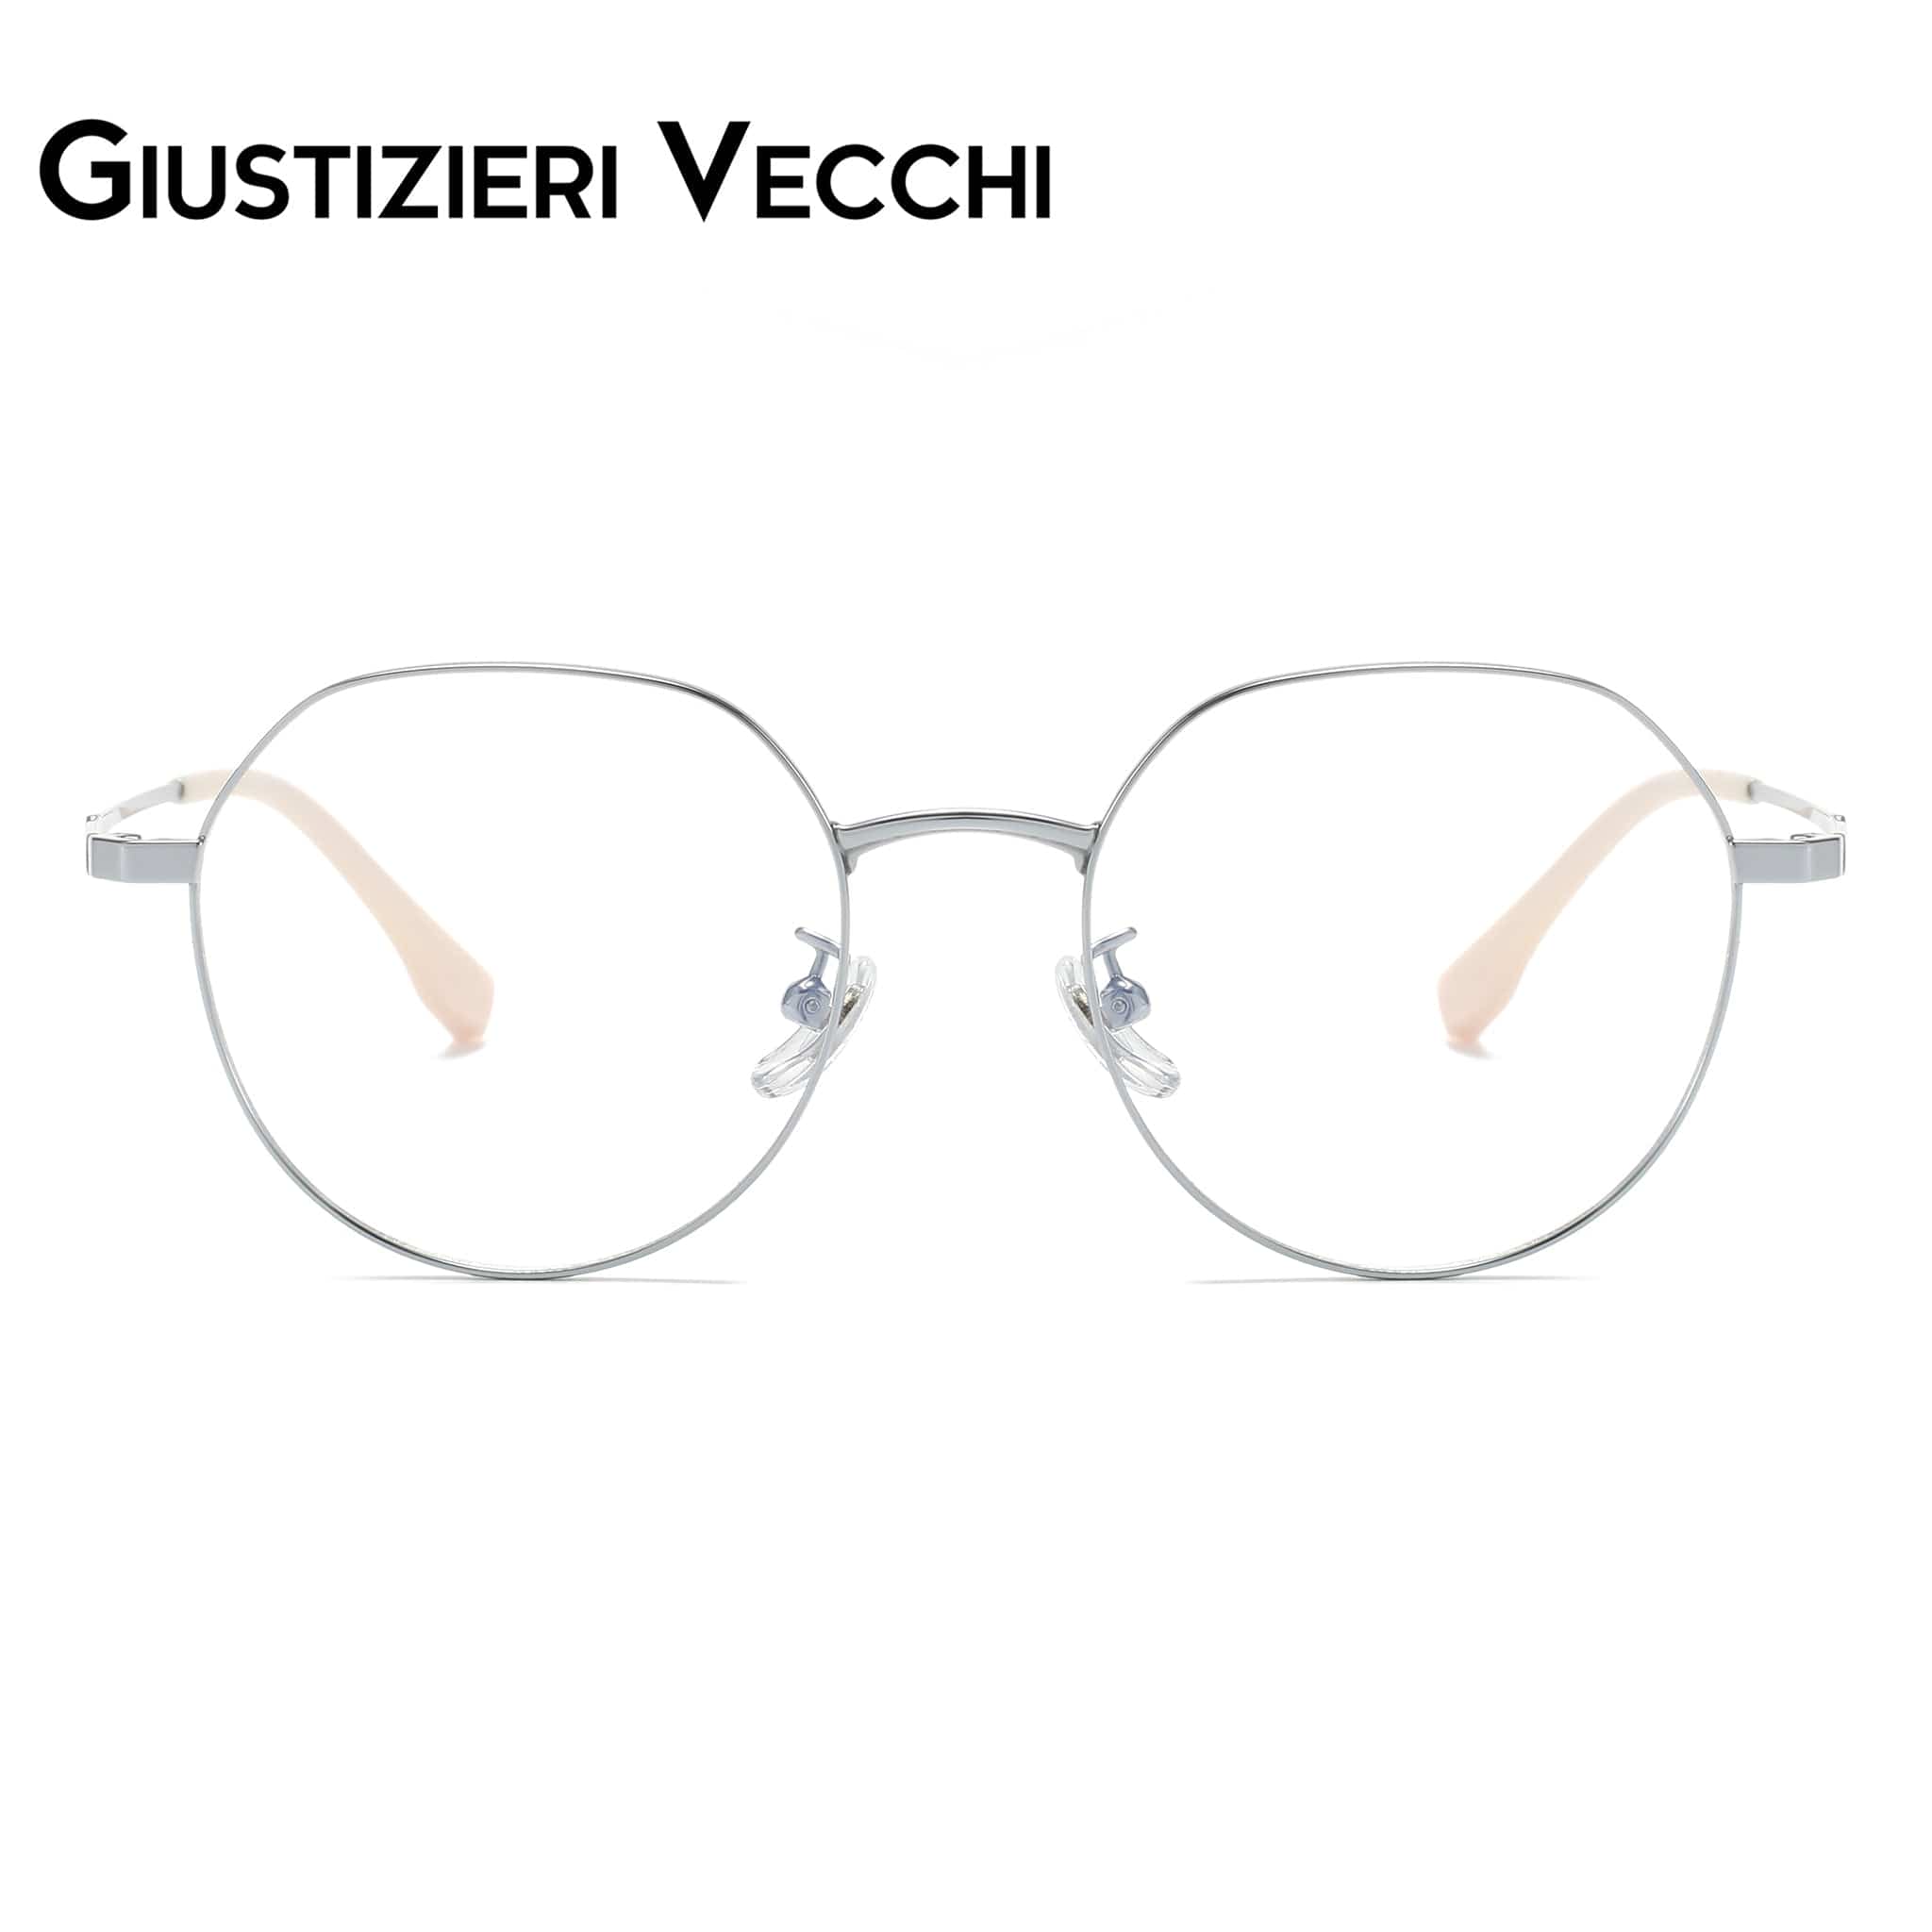 GIUSTIZIERI VECCHI Eyeglasses Small / Silver CoolSonic Duo